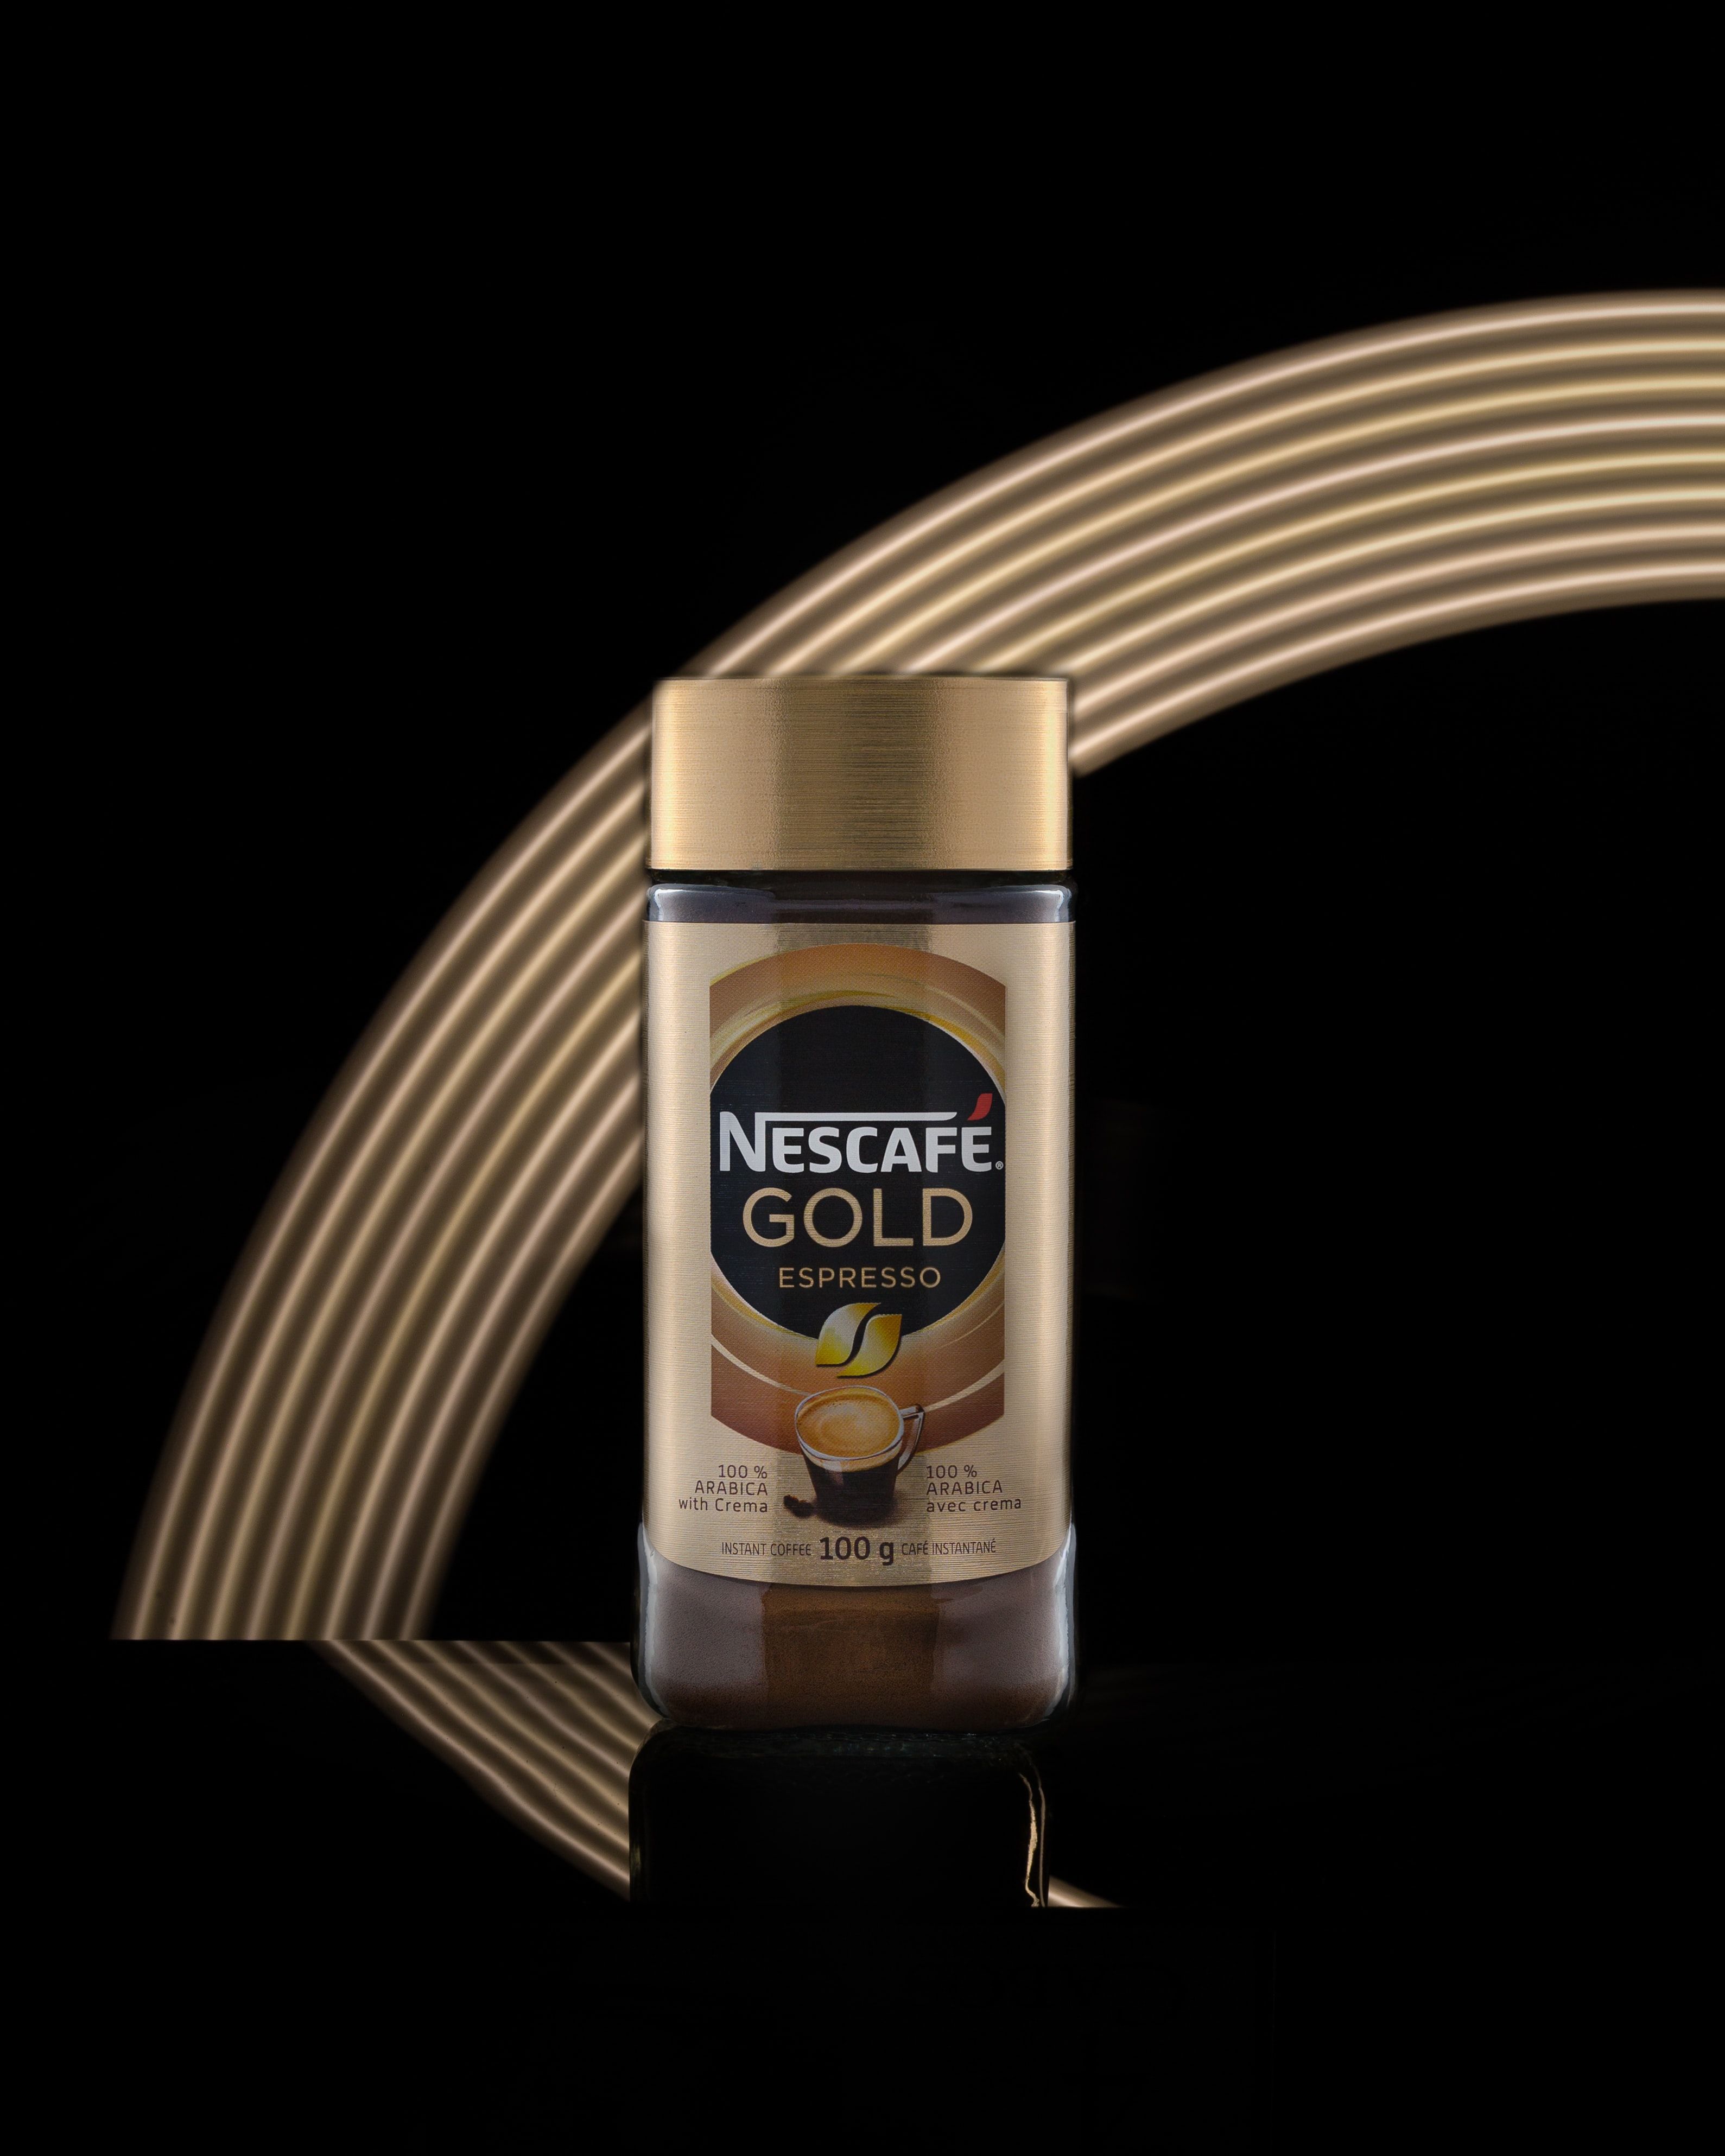 Nescafe Gold Espresso bottle photo .com